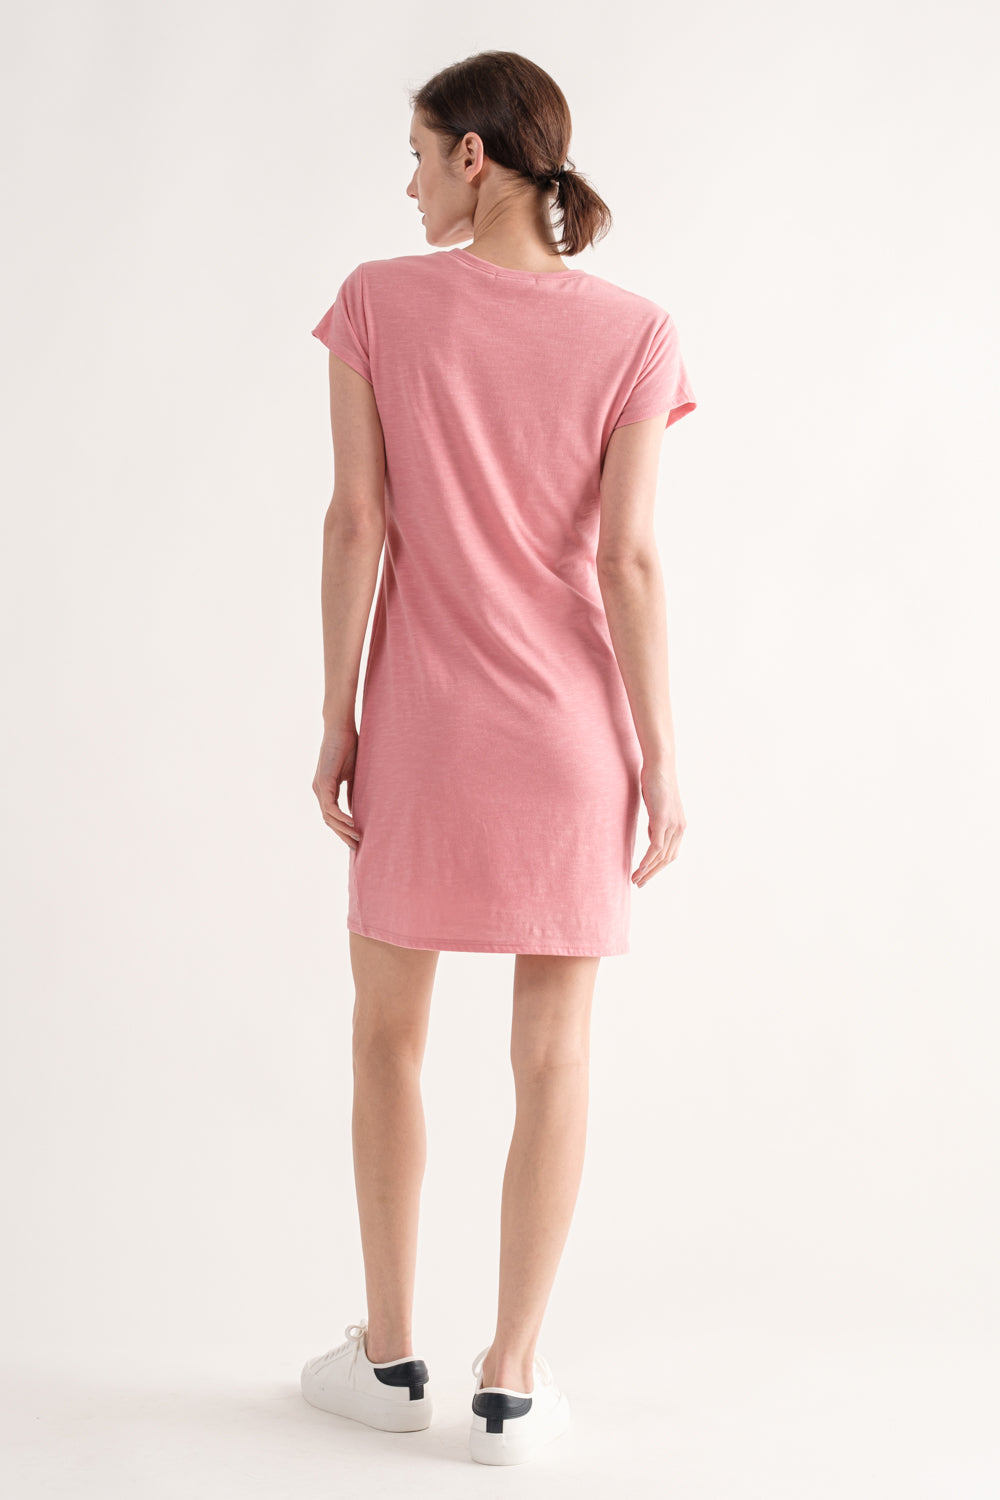 Calm Coral T-Shirt Dress